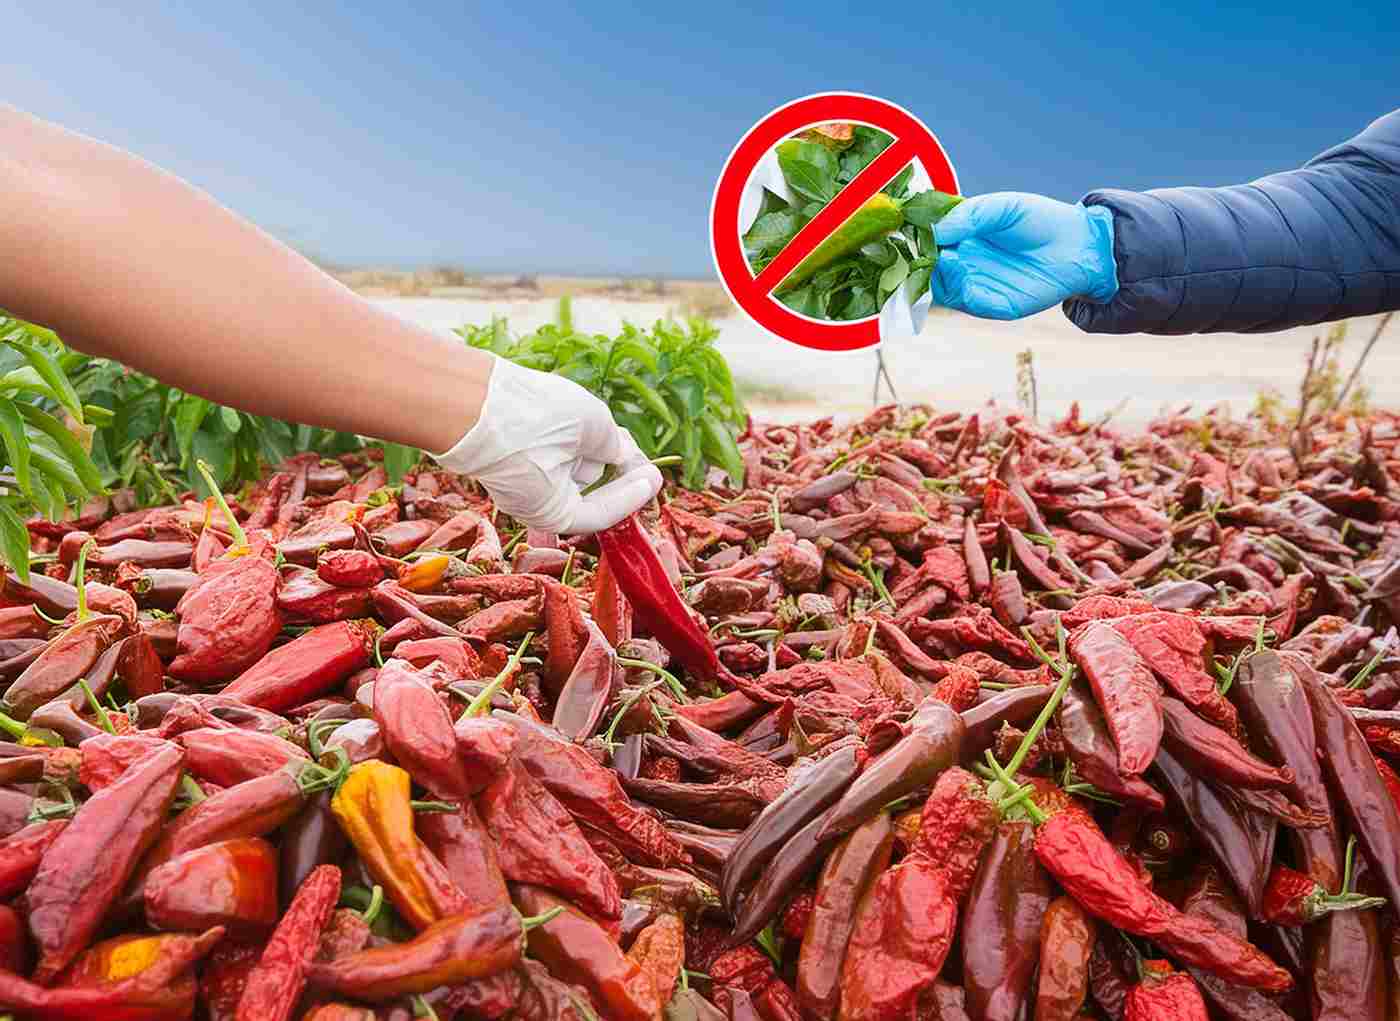 Alertes répétées sur des poivrons marocains en Espagne pour cause de pesticide interdit